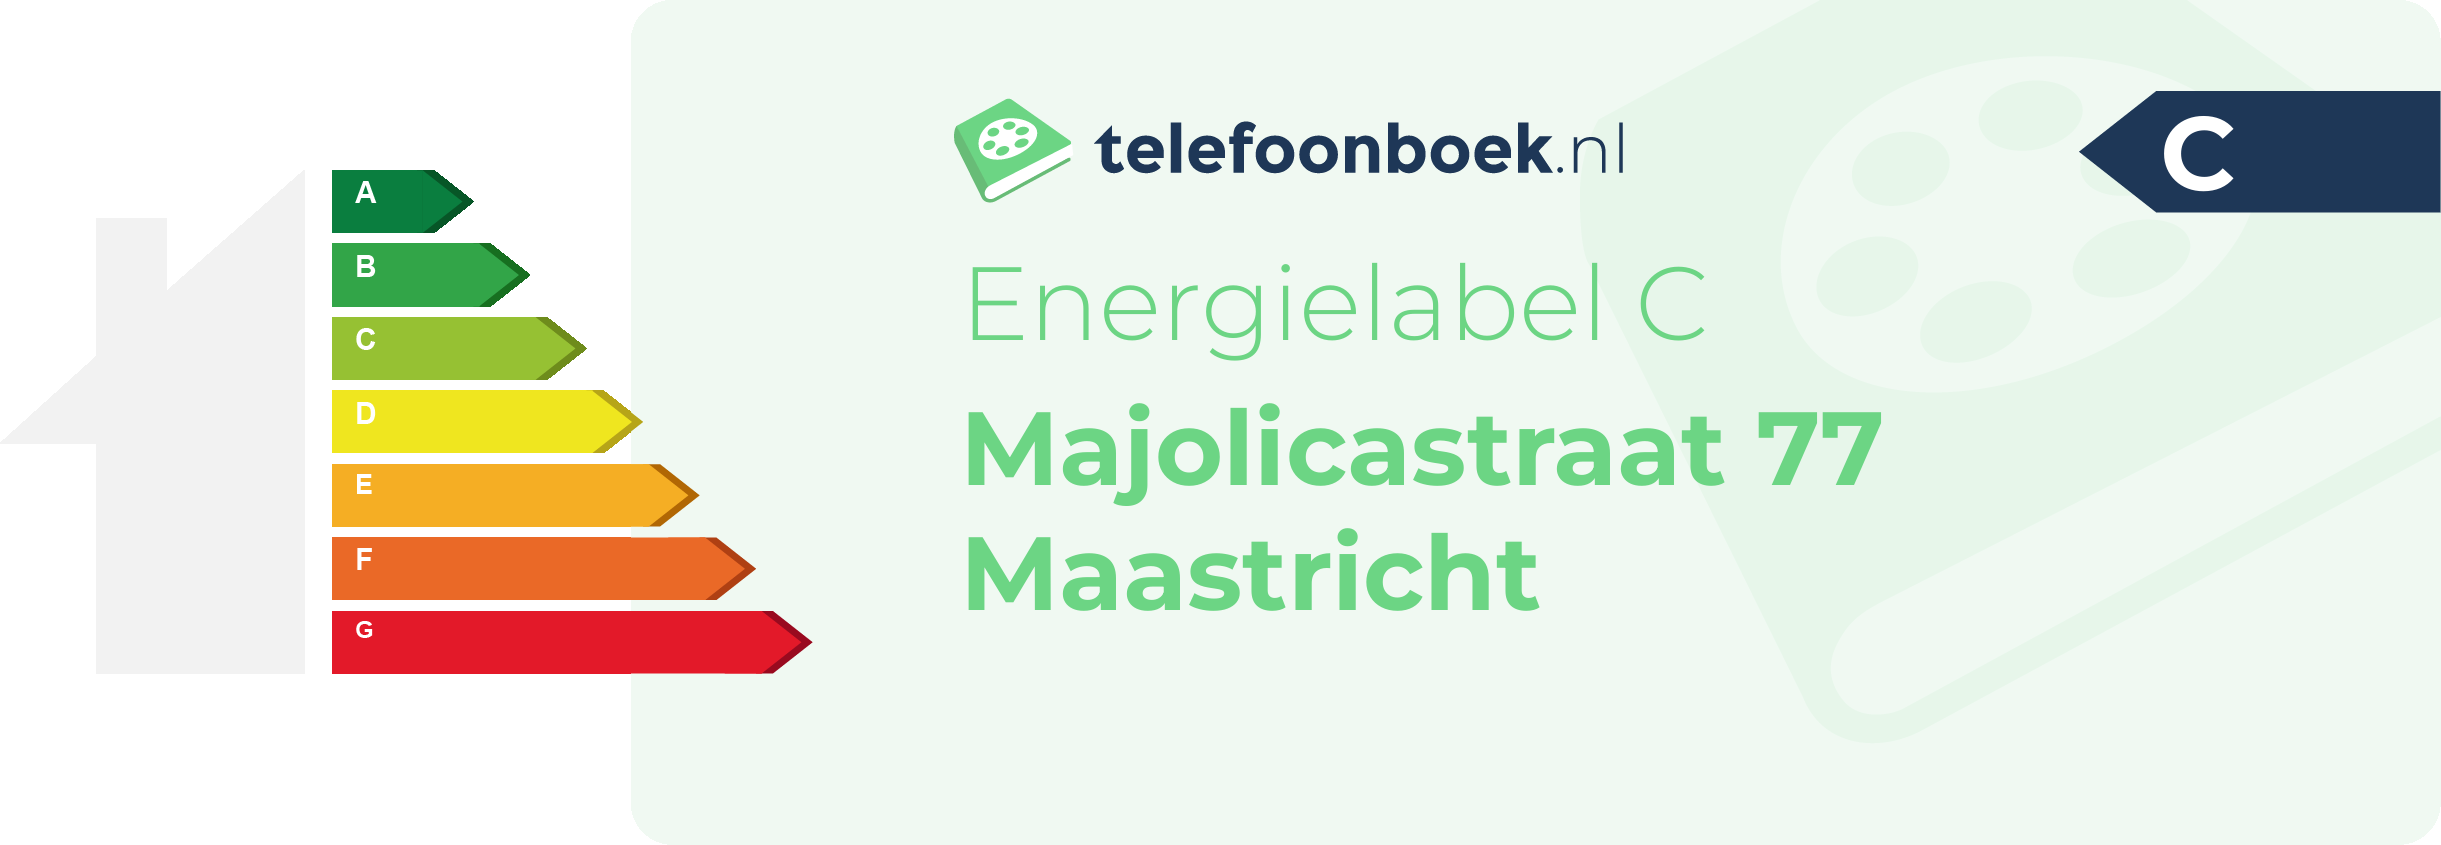 Energielabel Majolicastraat 77 Maastricht